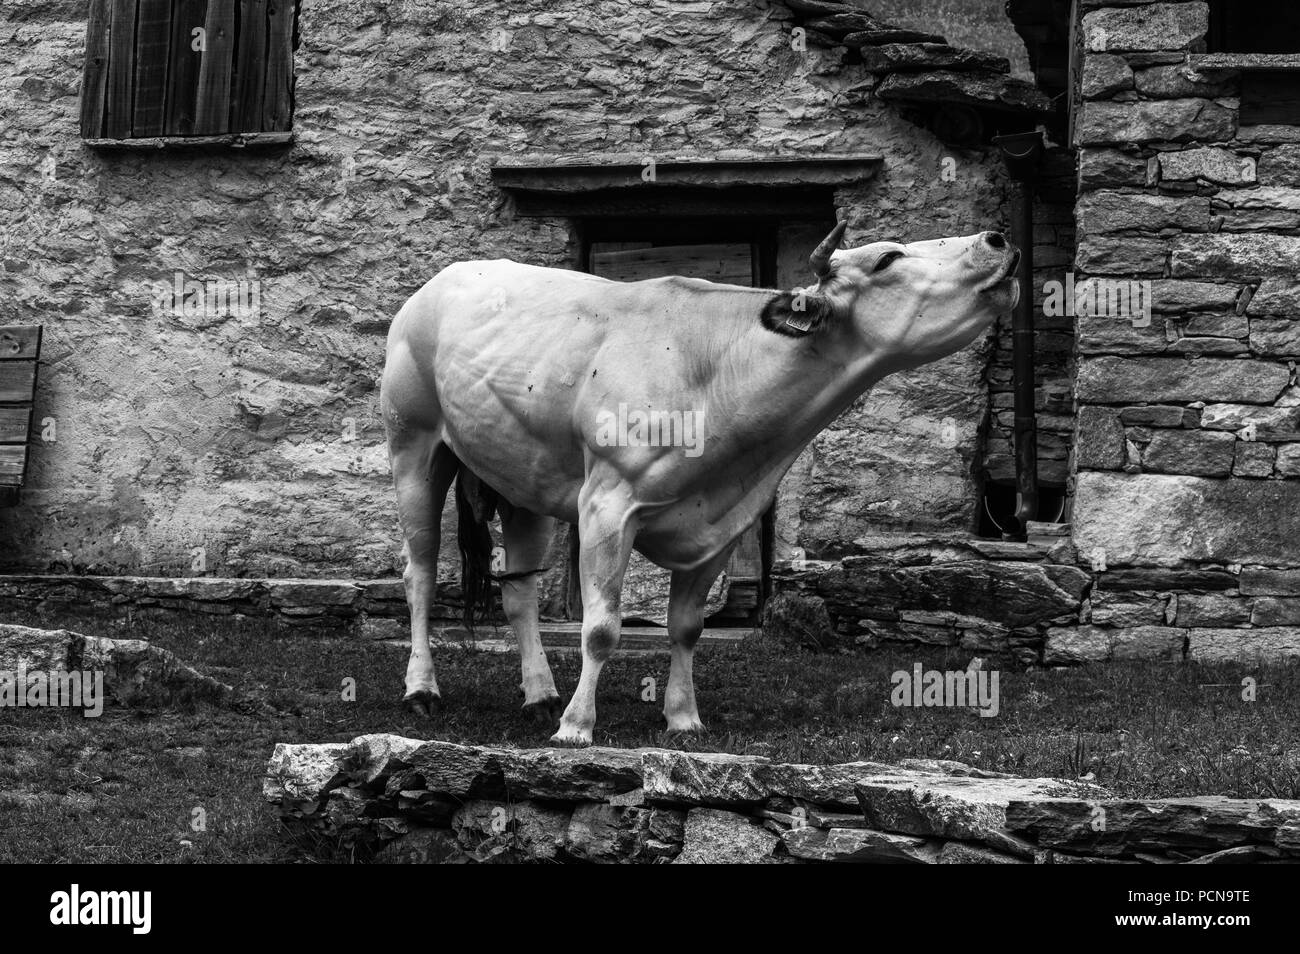 Cow in Mountain, Piedmont, Italy. Una mucca su di un alpeggio, Piemonte, Italia. Stock Photo